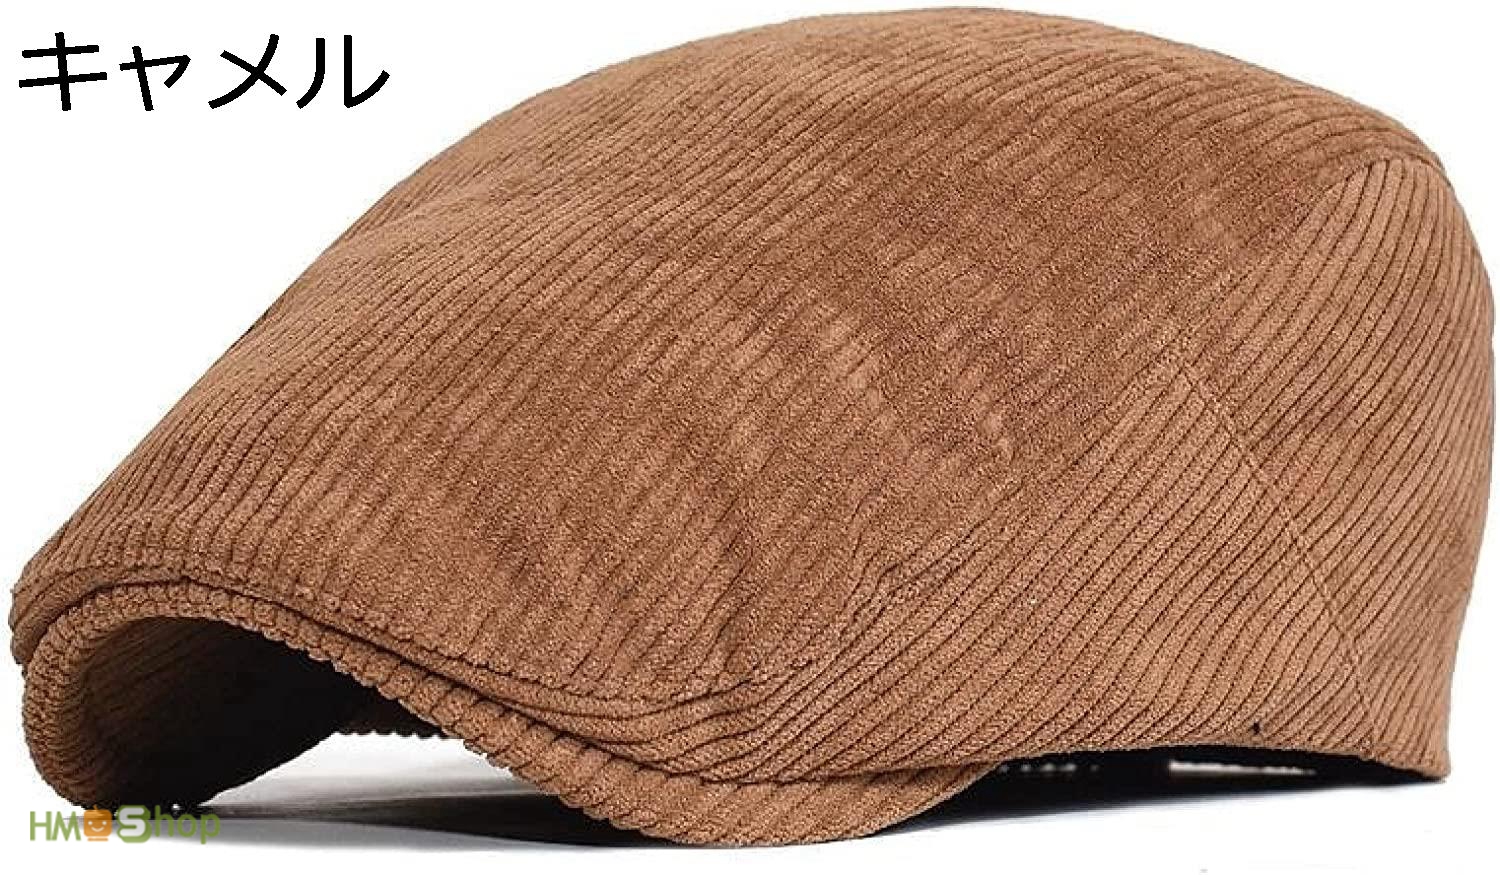 ハンチング帽 子 メンズ 秋 冬 カモノハシラクダコーデュロイ男アイビーキャップ ベレー帽